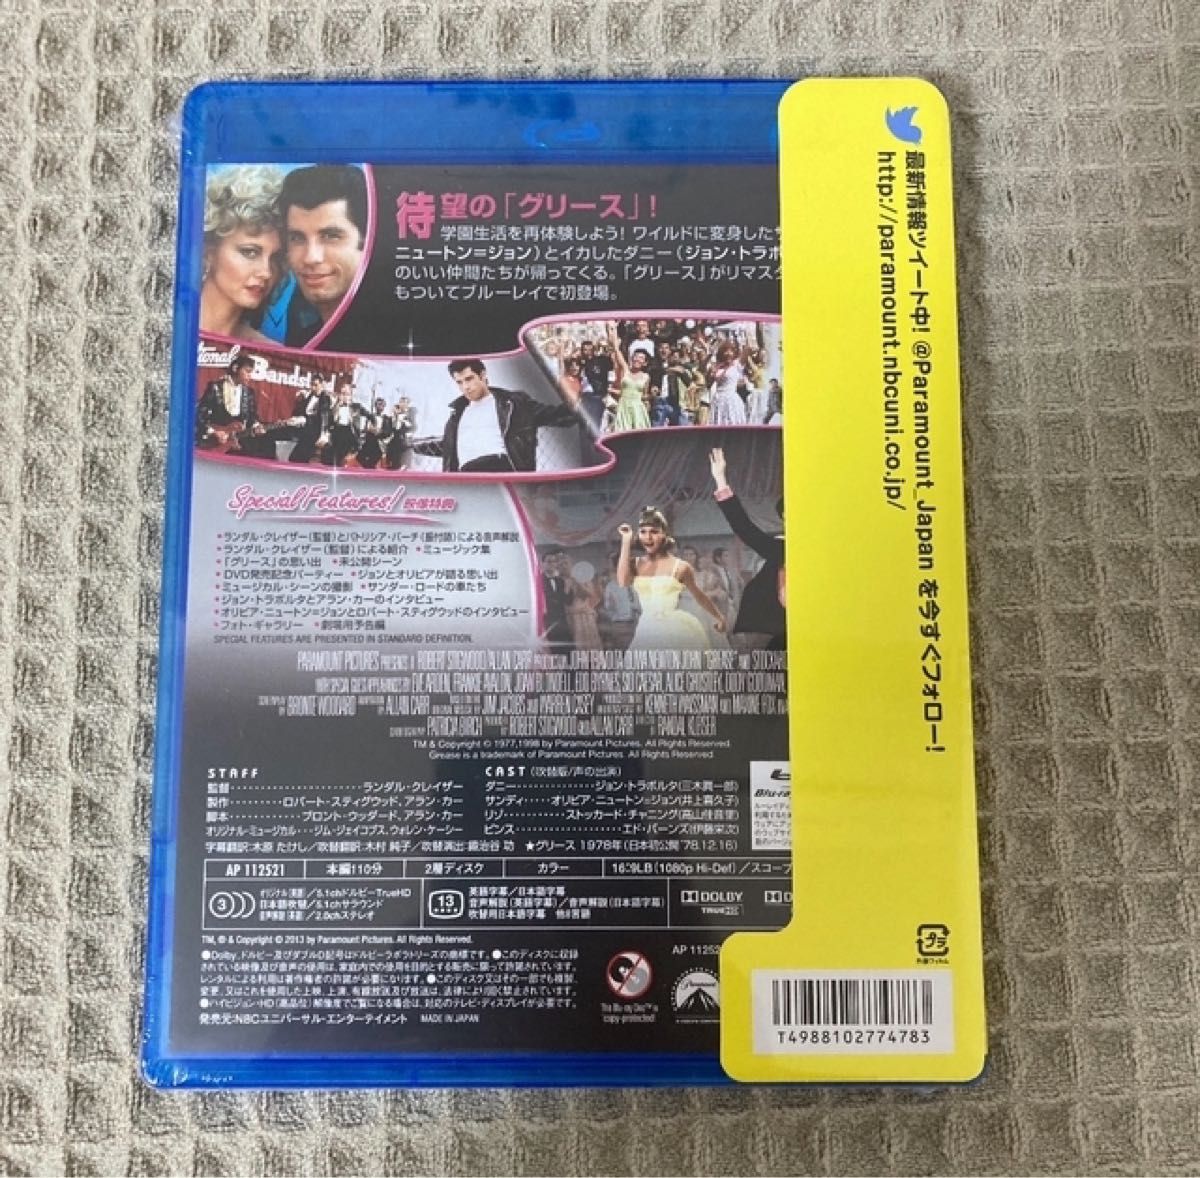 【新品未開封】グリース スペシャル・コレクターズ・エディション [Blu-ray]